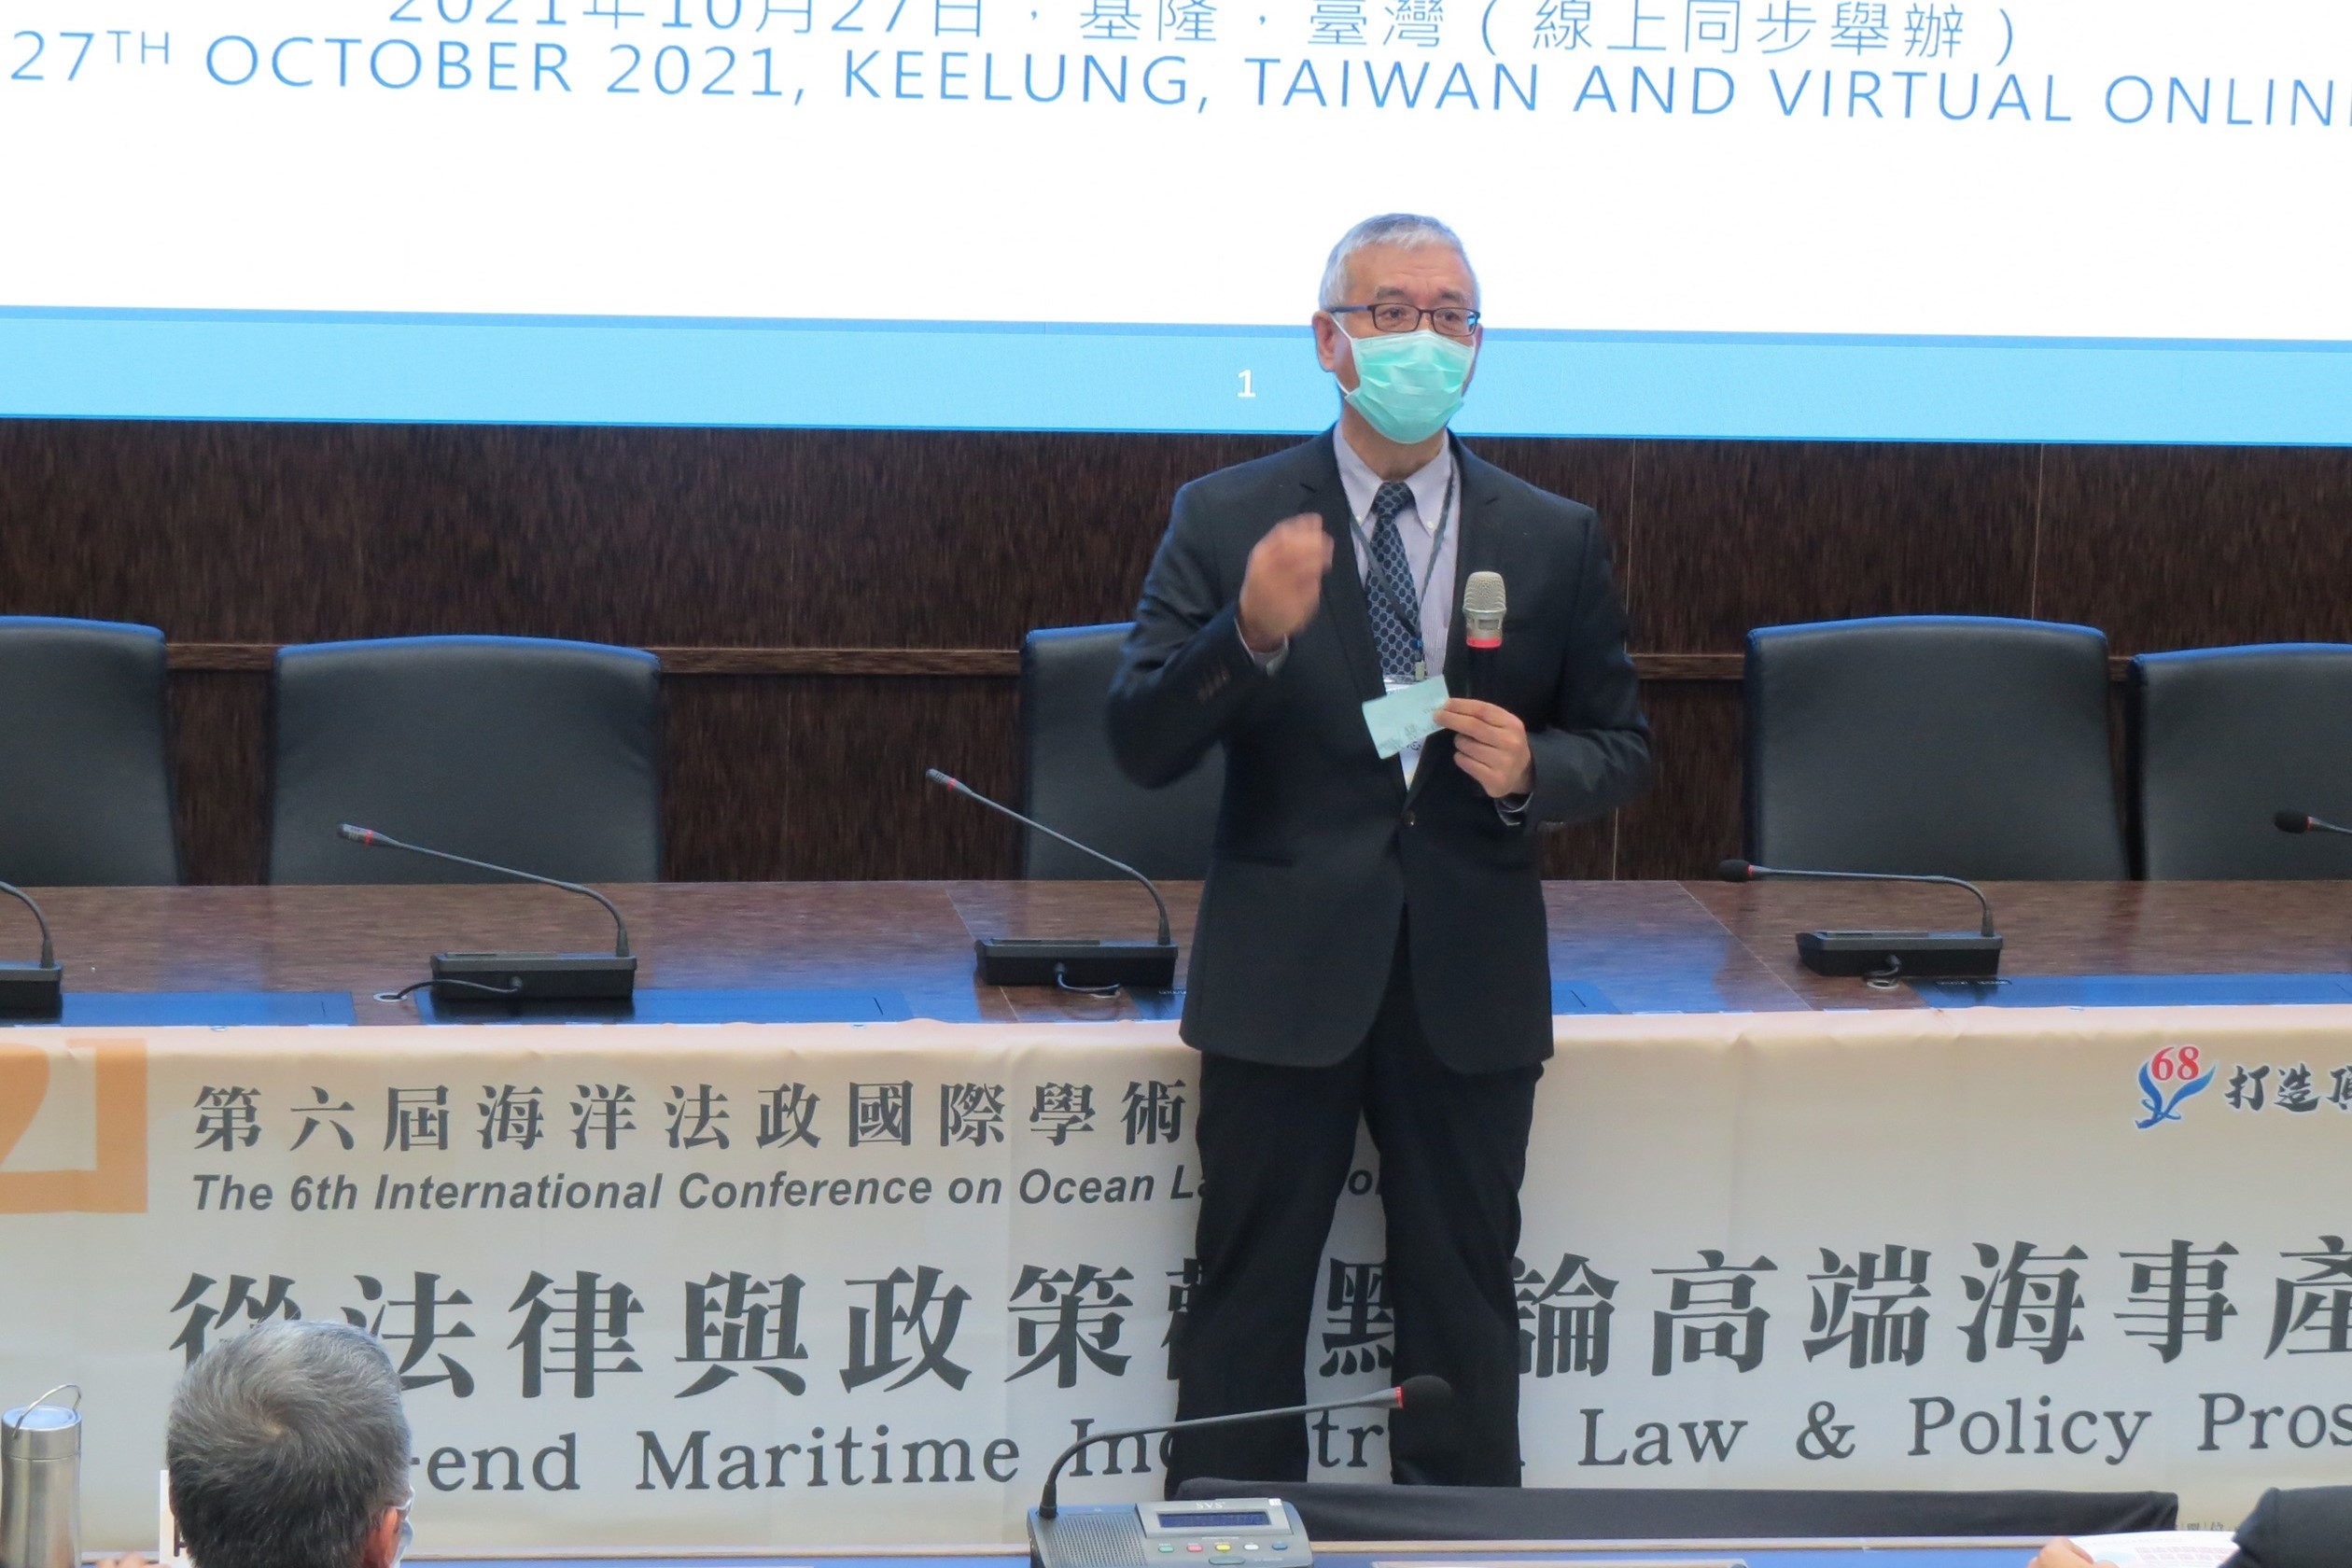 張志清副校長說隨著科技發展海事國際公約等法律制度勢必隨之修改